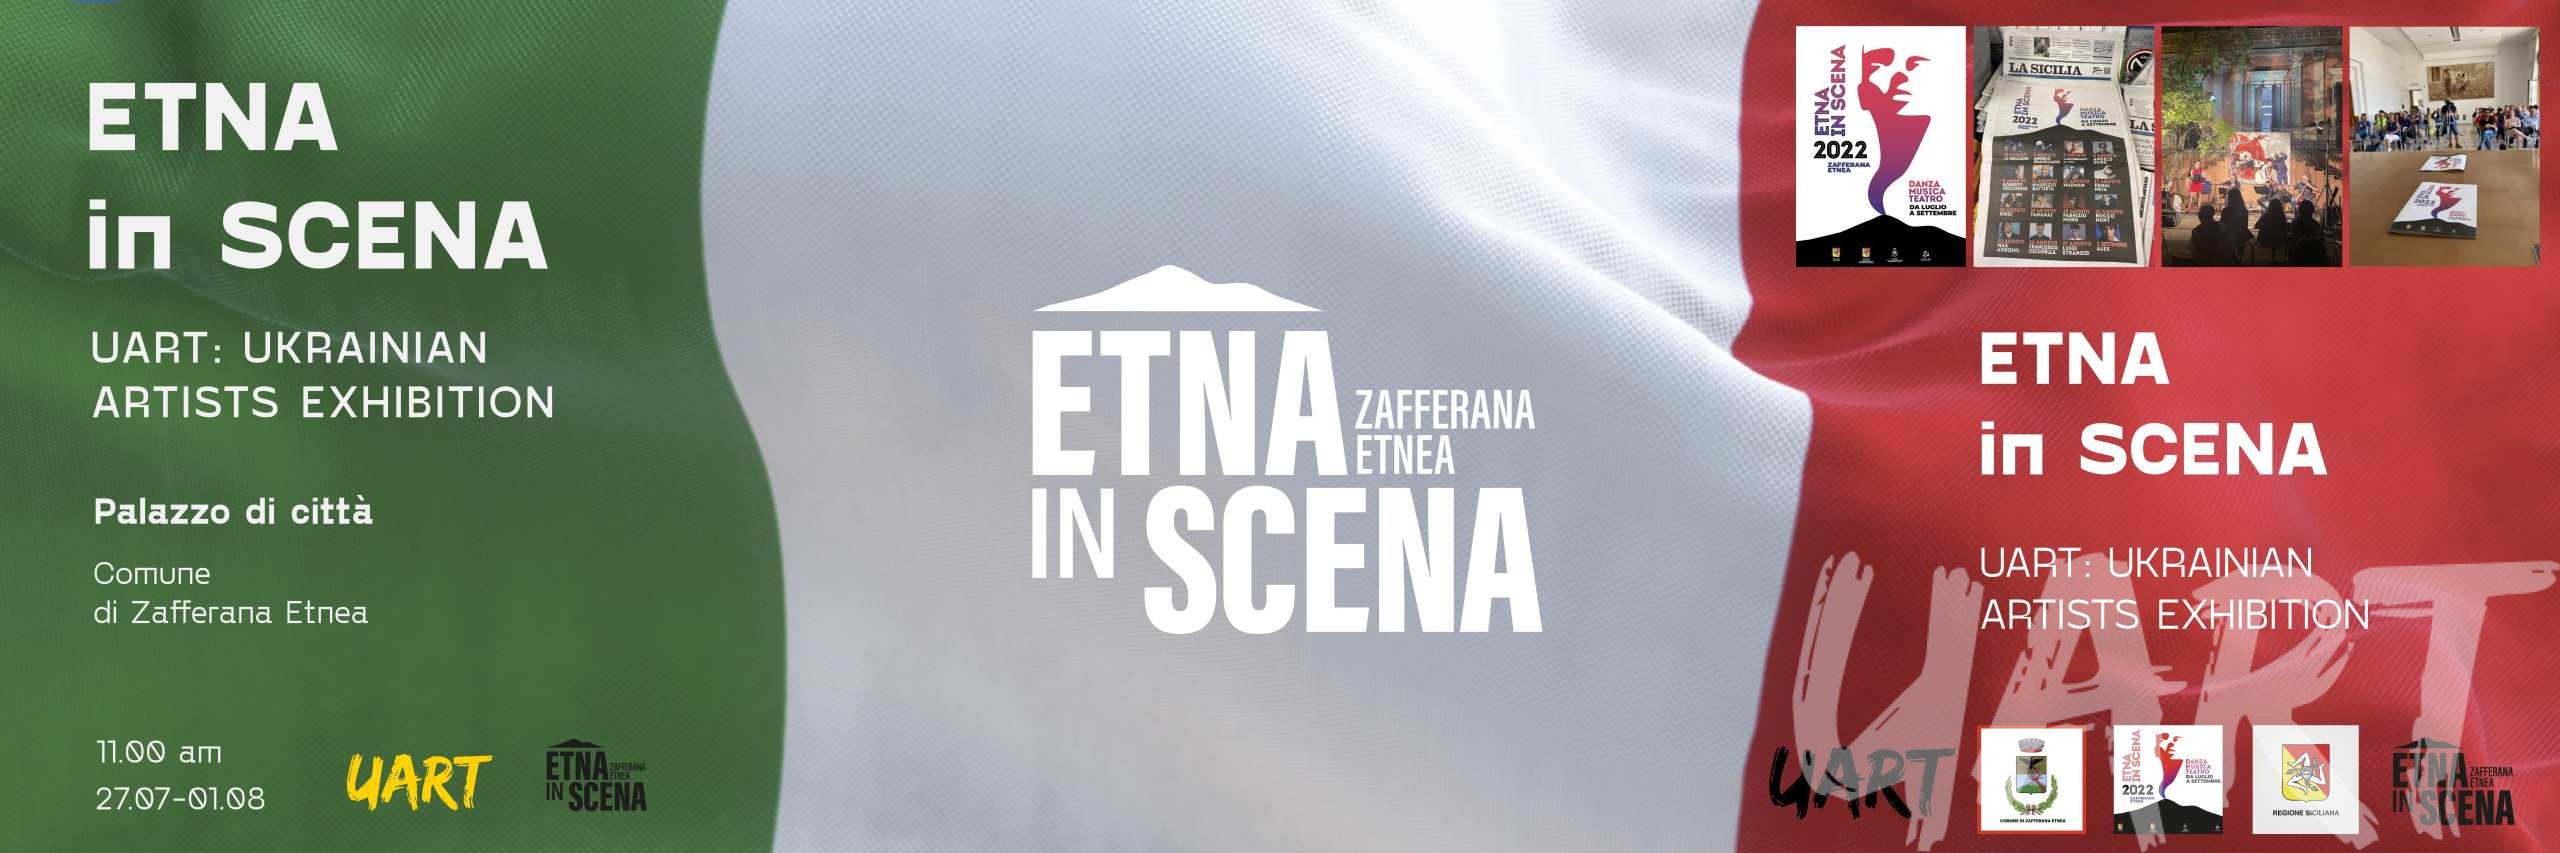 Etna in scena poster full